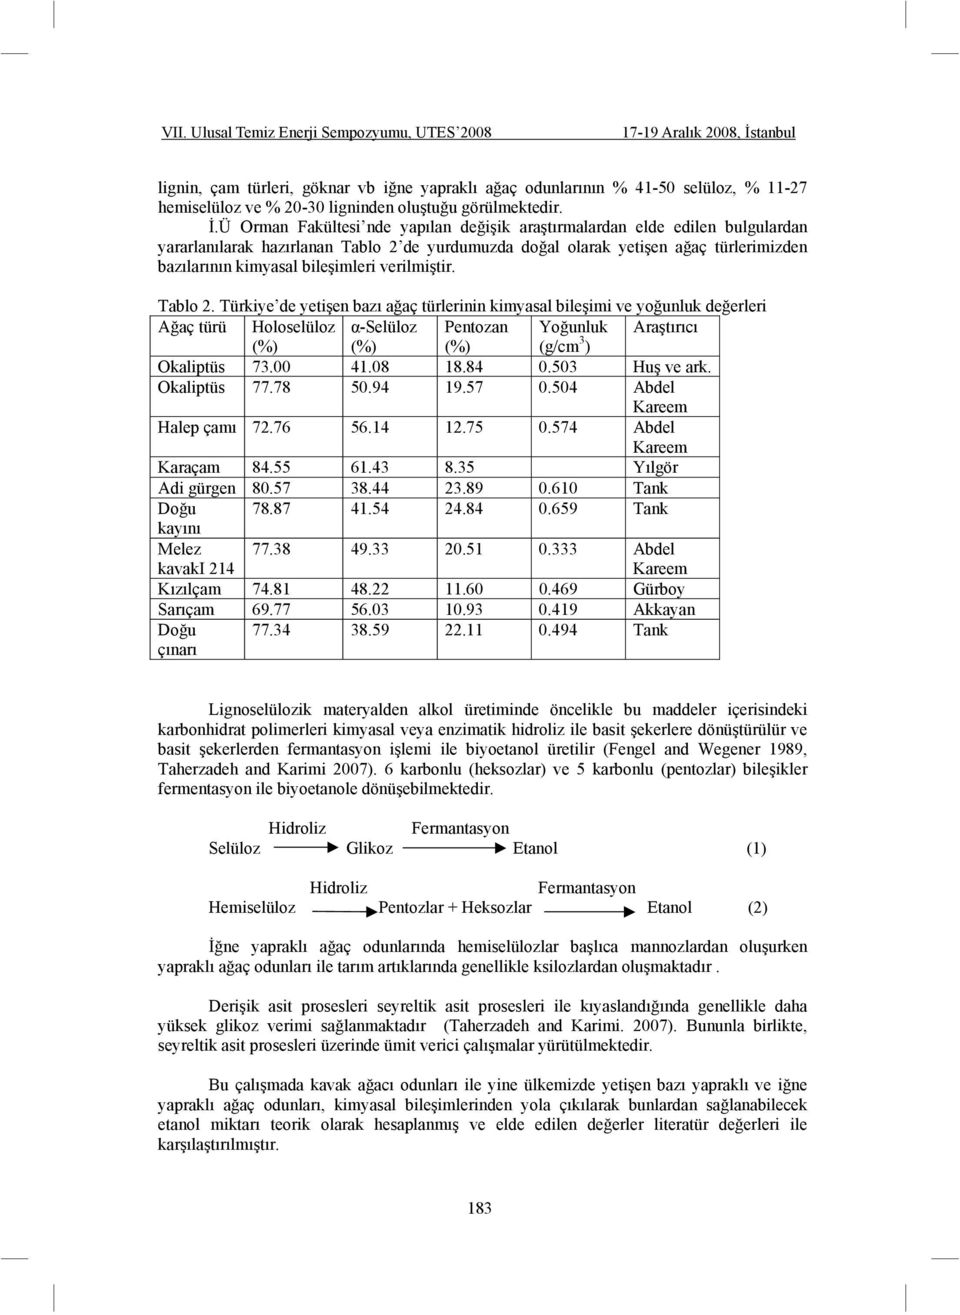 verilmi tir. Tablo 2. Türkiye de yeti en bazı a aç türlerinin kimyasal bile imi ve yo unluk de erleri A aç türü Holoselüloz -Selüloz Pentozan Yo unluk Ara tırıcı (%) (%) (%) (g/cm 3 ) Okaliptüs 73.